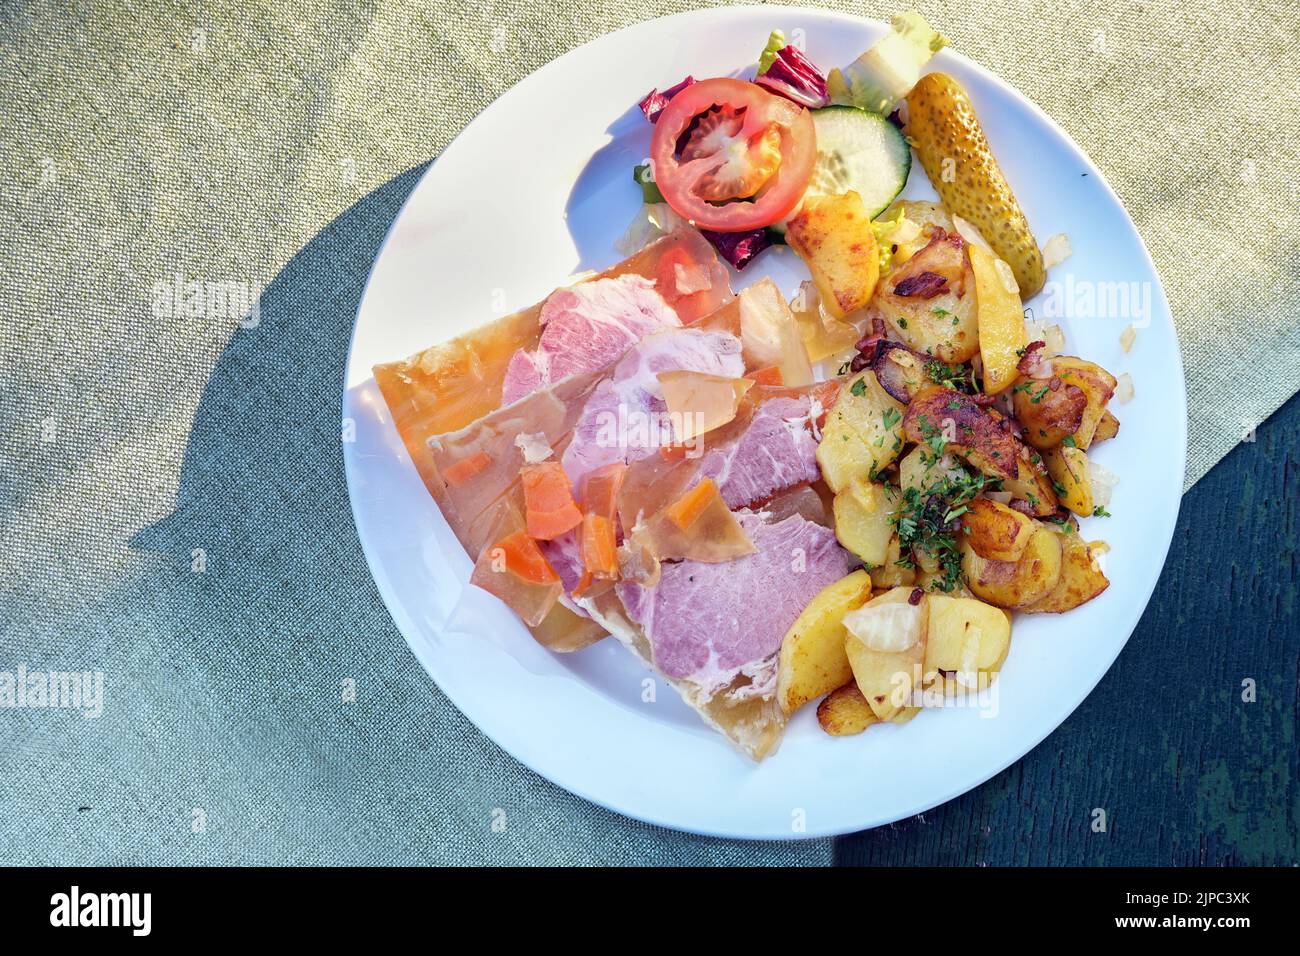 Sauerfleisch mit Bratkartoffeln o salice di carne in aspico con patate fritte, piatto tradizionale tedesco e austriaco su piatto bianco e rustico Foto Stock